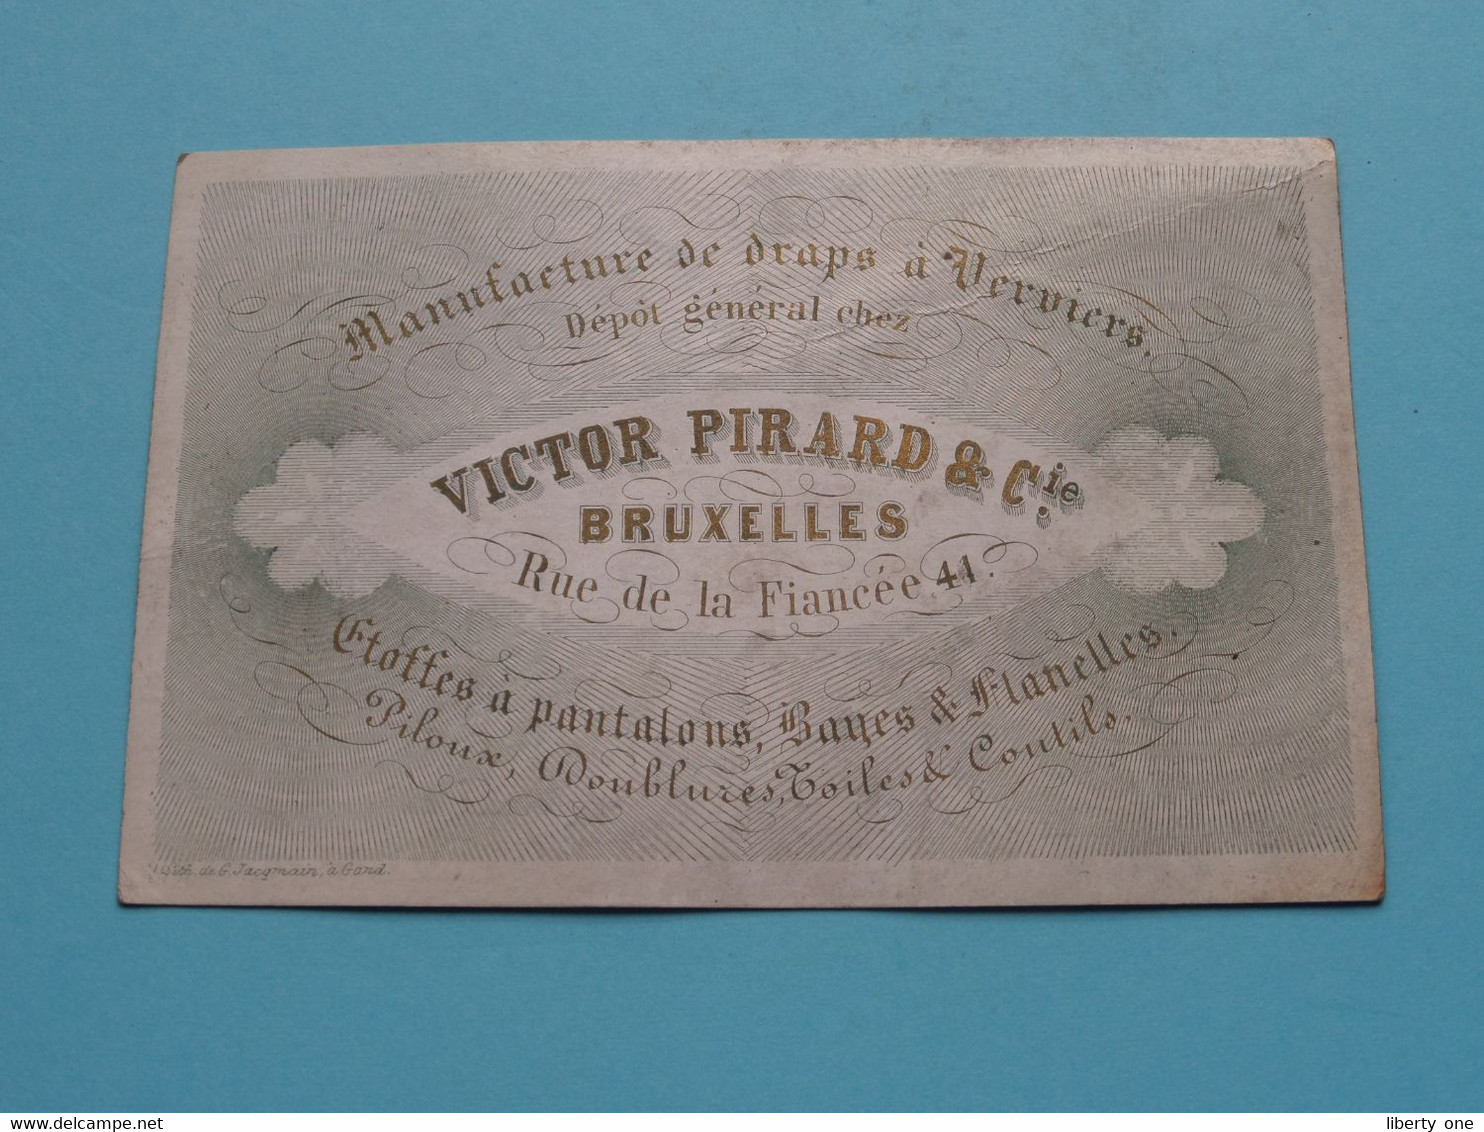 VICTOR PIRARD & Cie - Rue De La Fiancée 44 > BRUXELLES & Verviers ( Porcelein Porcelaine Porzellan ) Jacqmain ! - Visiting Cards